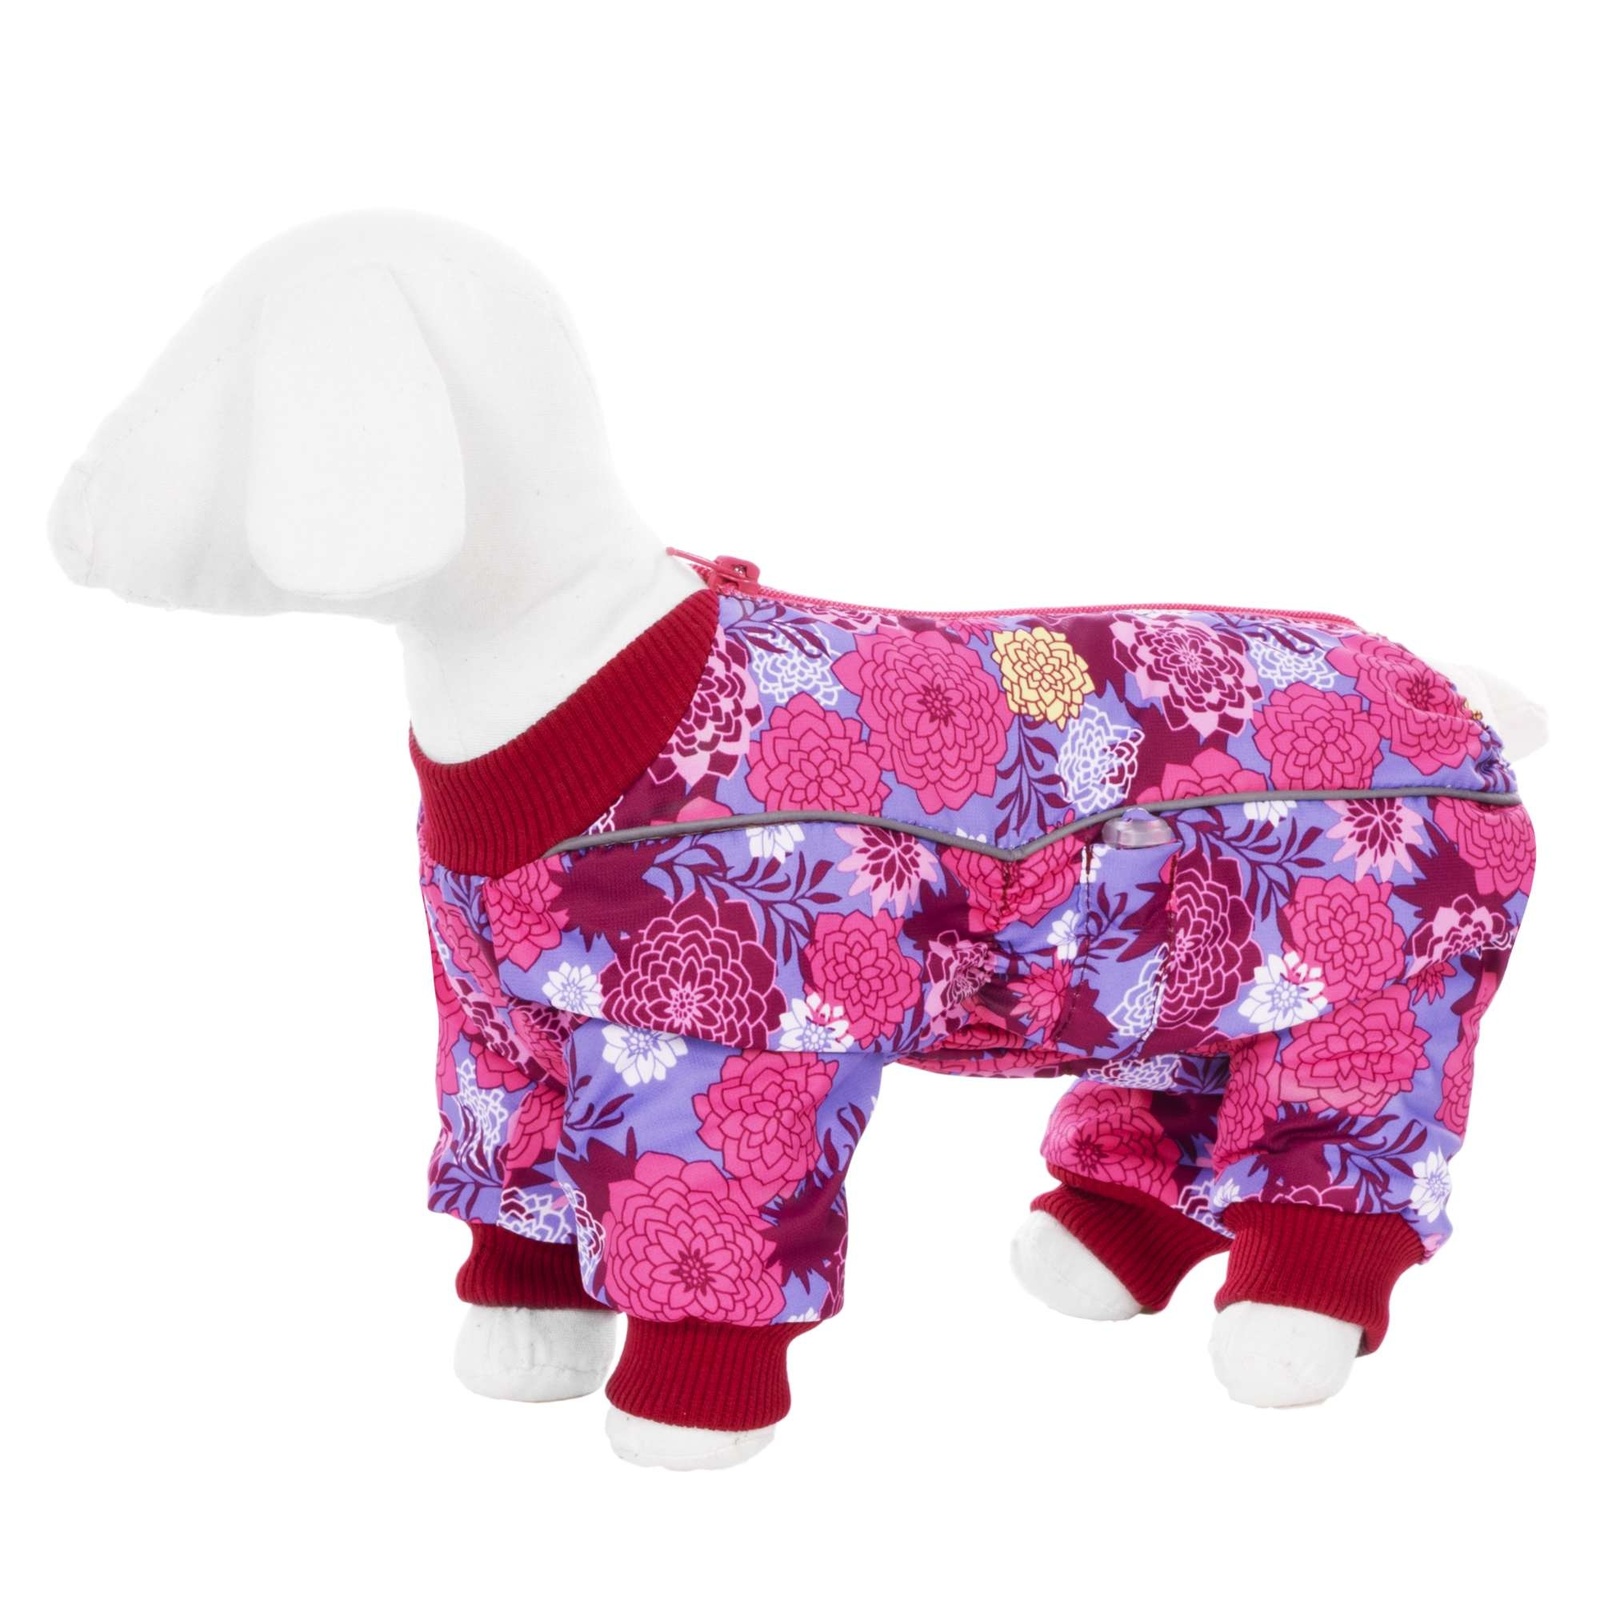 Yami-Yami одежда Yami-Yami одежда комбинезон для собак малых пород, на флисе с рисунком цветы (100 г) yami yami одежда yami yami одежда комбинезон для собак малых пород на флисе с рисунком краски xl